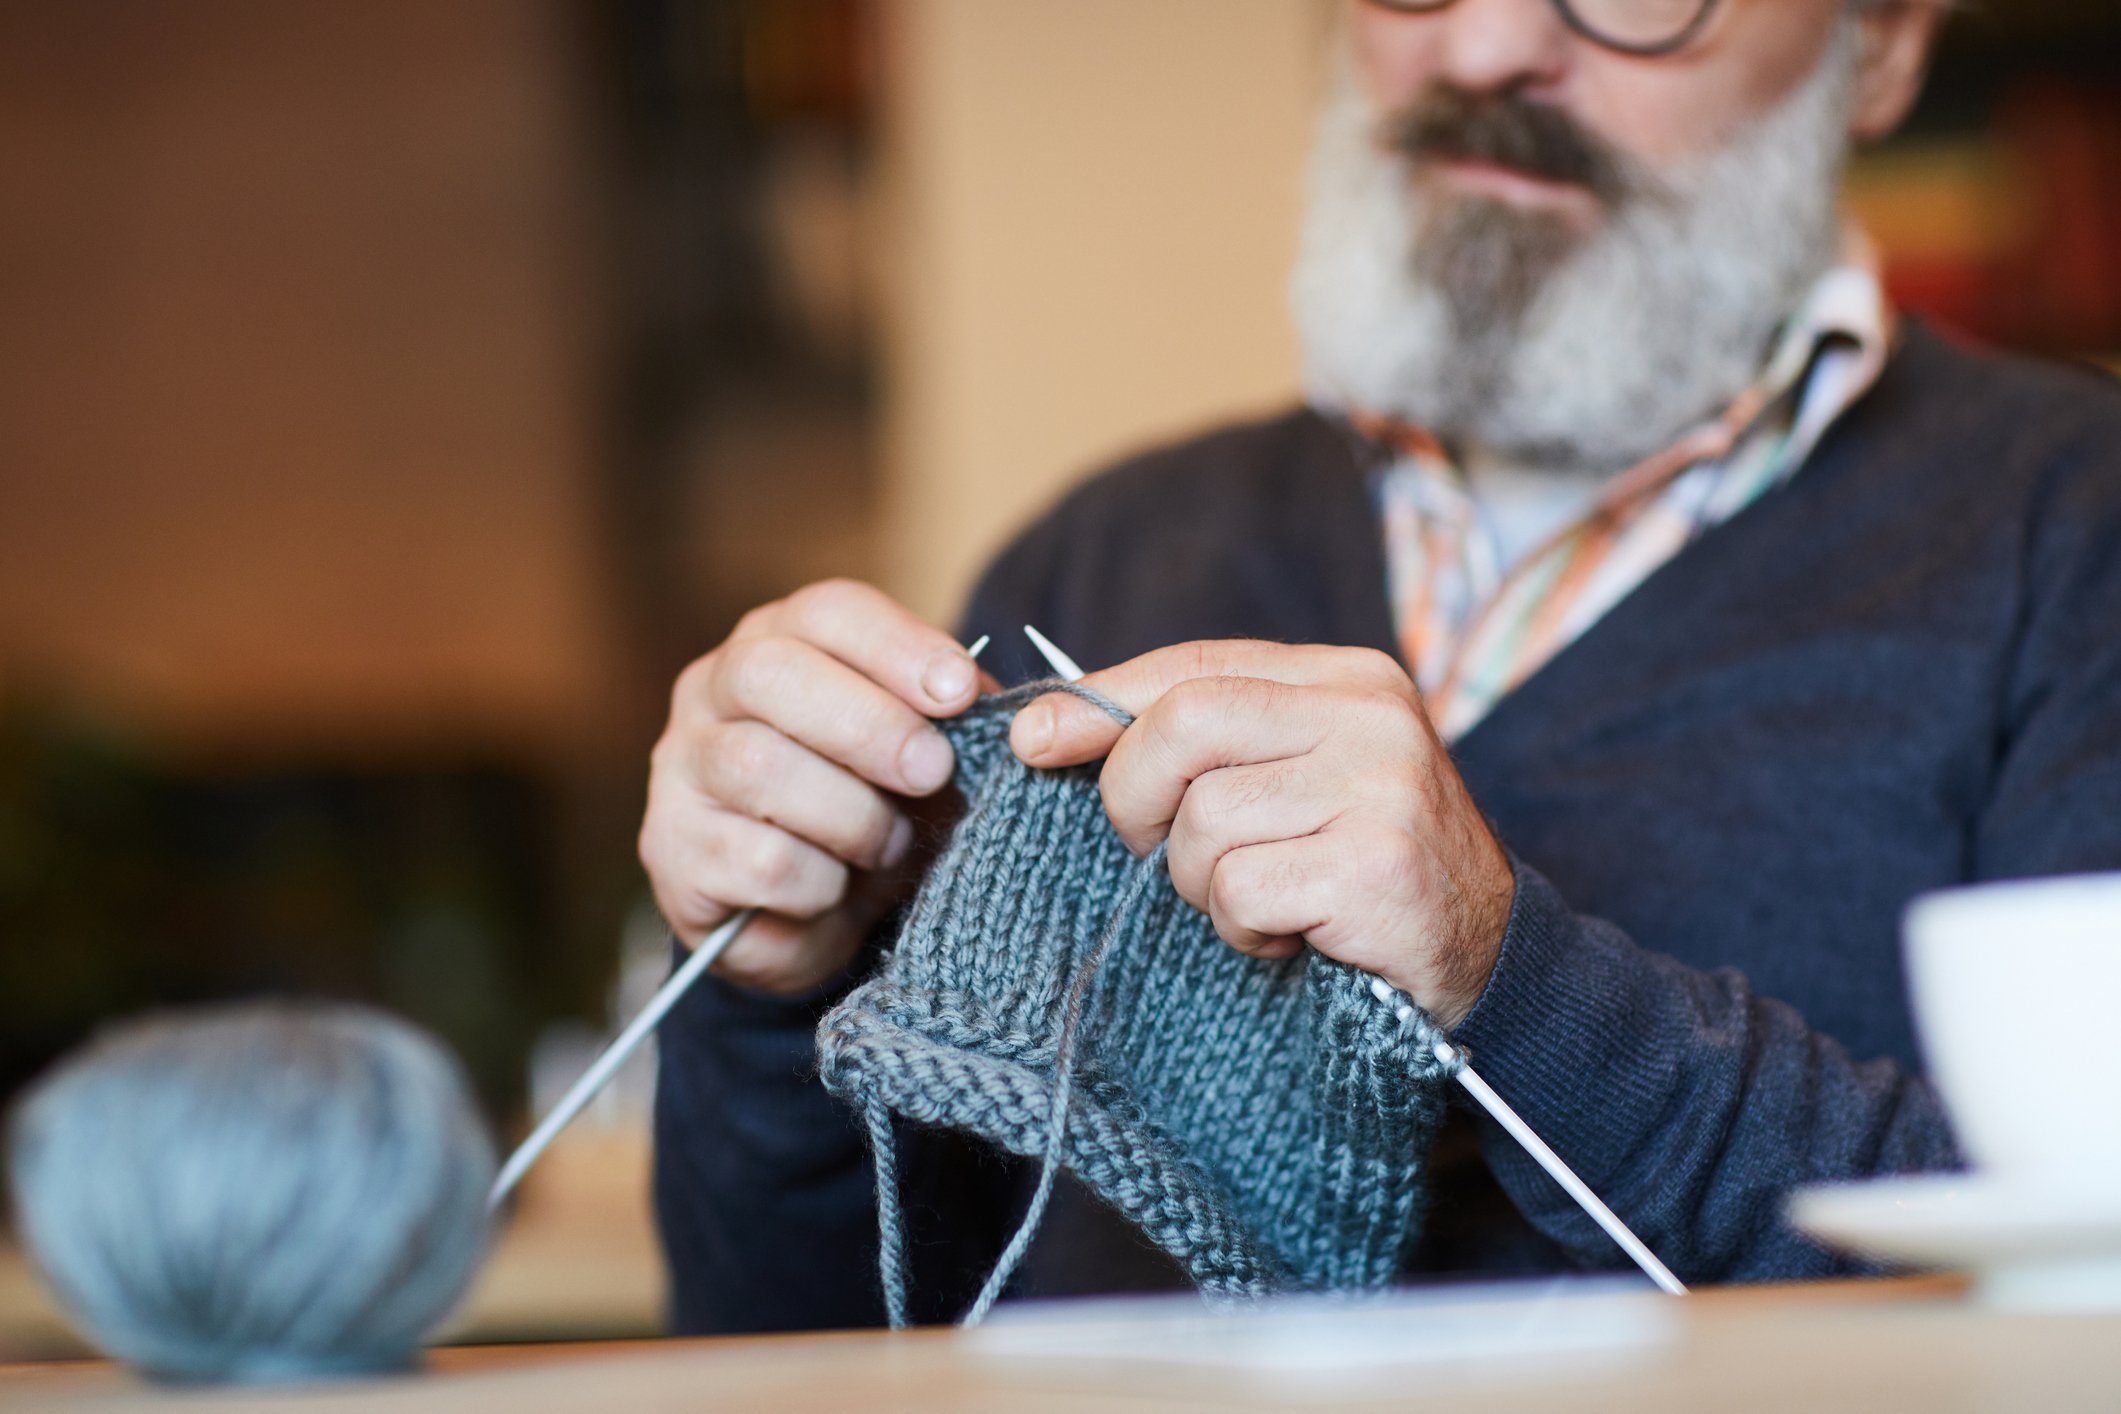 Grandpa knitting